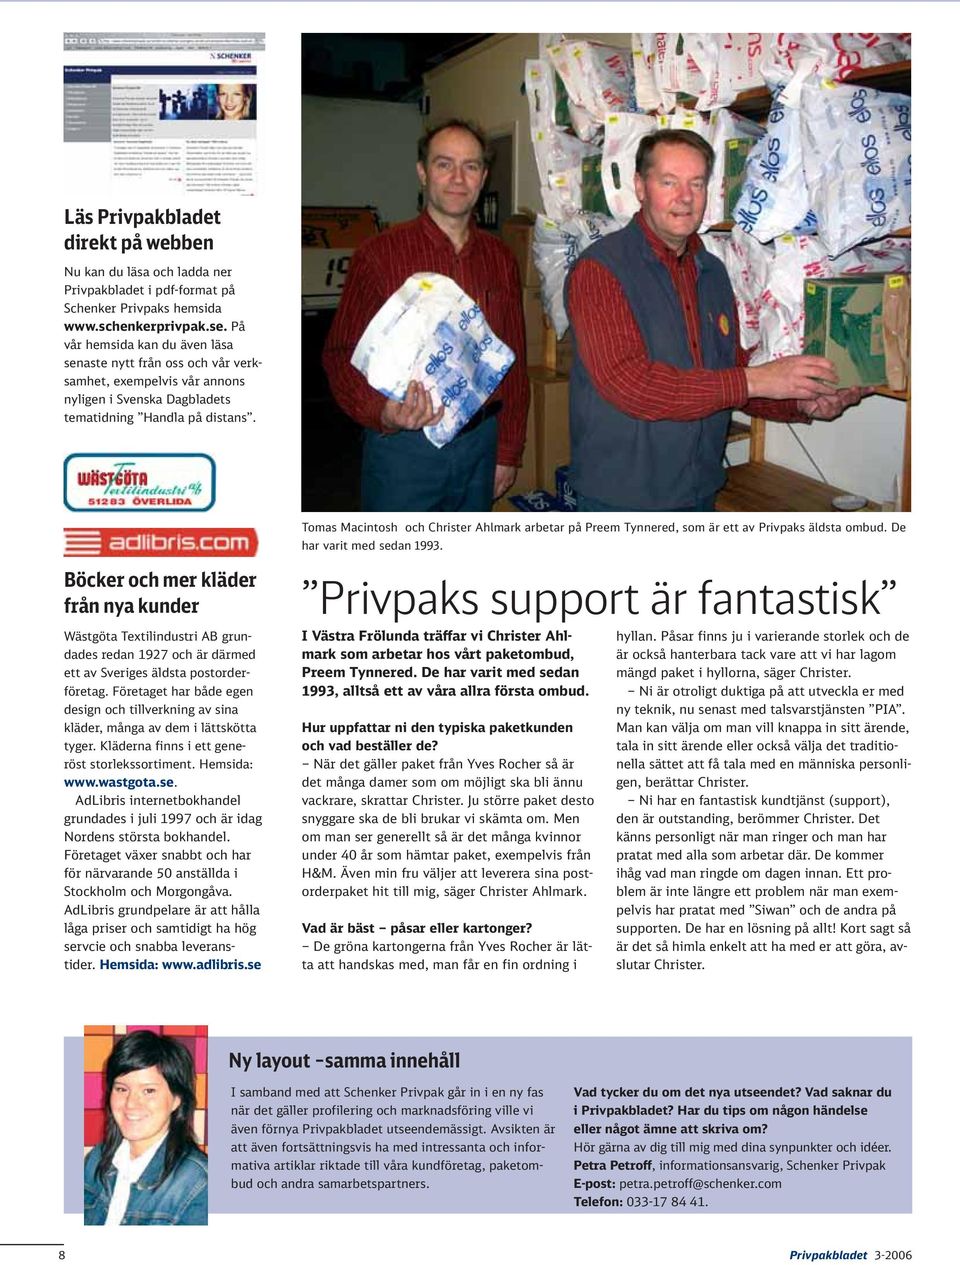 Tomas Macintosh och Christer Ahlmark arbetar på Preem Tynnered, som är ett av Privpaks äldsta ombud. De har varit med sedan 1993.